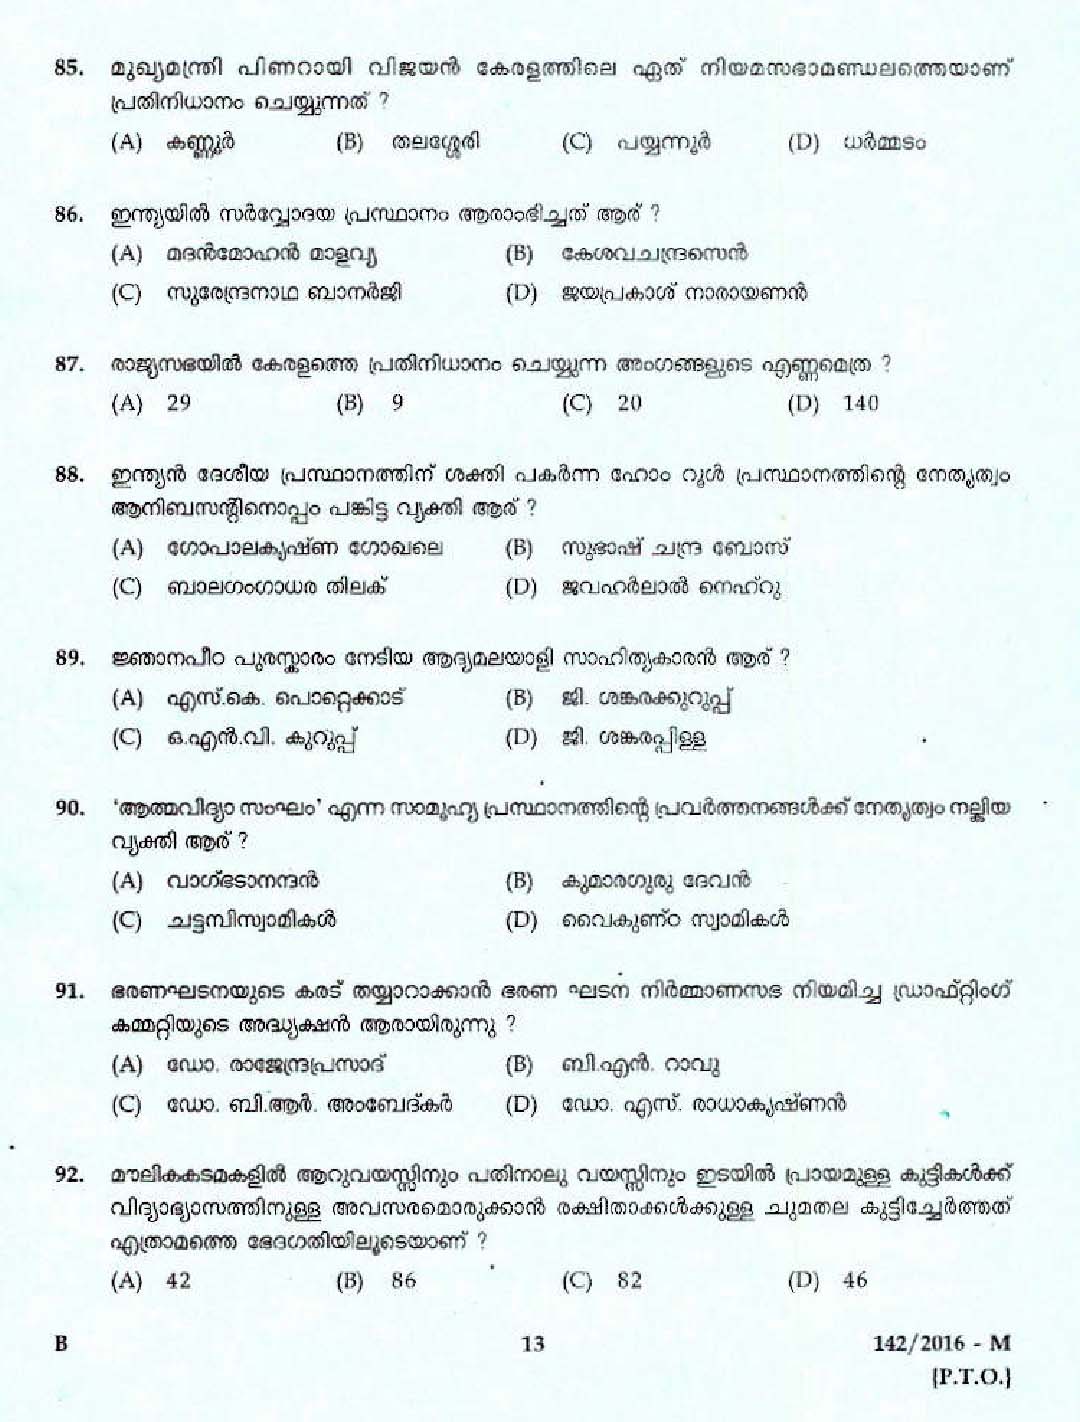 Kerala PSC Boat Lascar Exam 2016 Question Paper Code 1422016 M 9